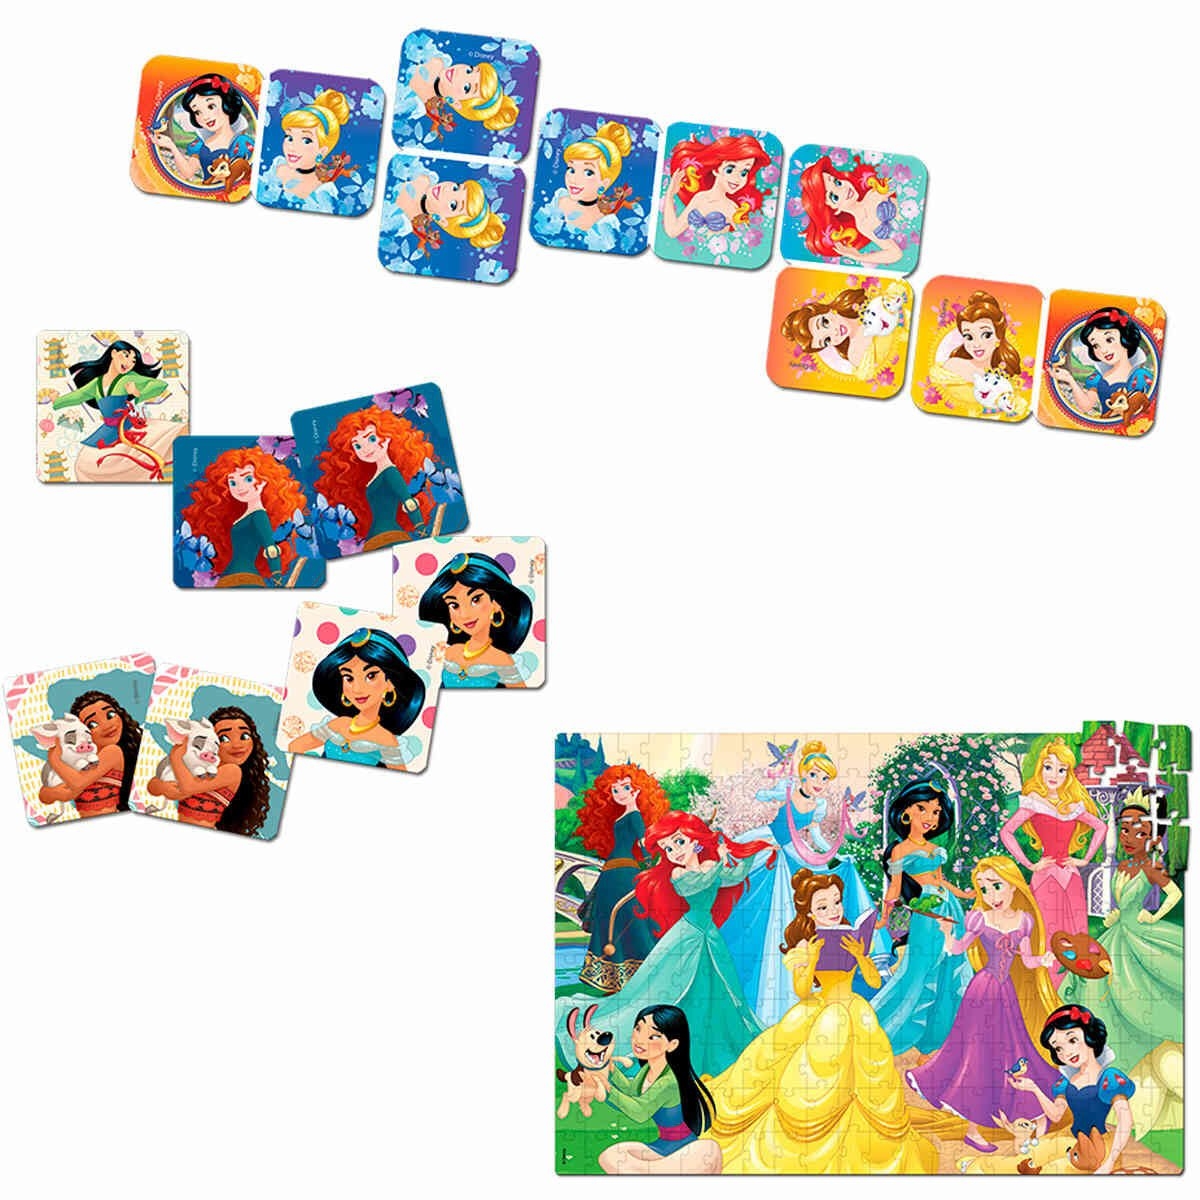 Jogo da Memória Infantil Princesas Disney Toyster 2562